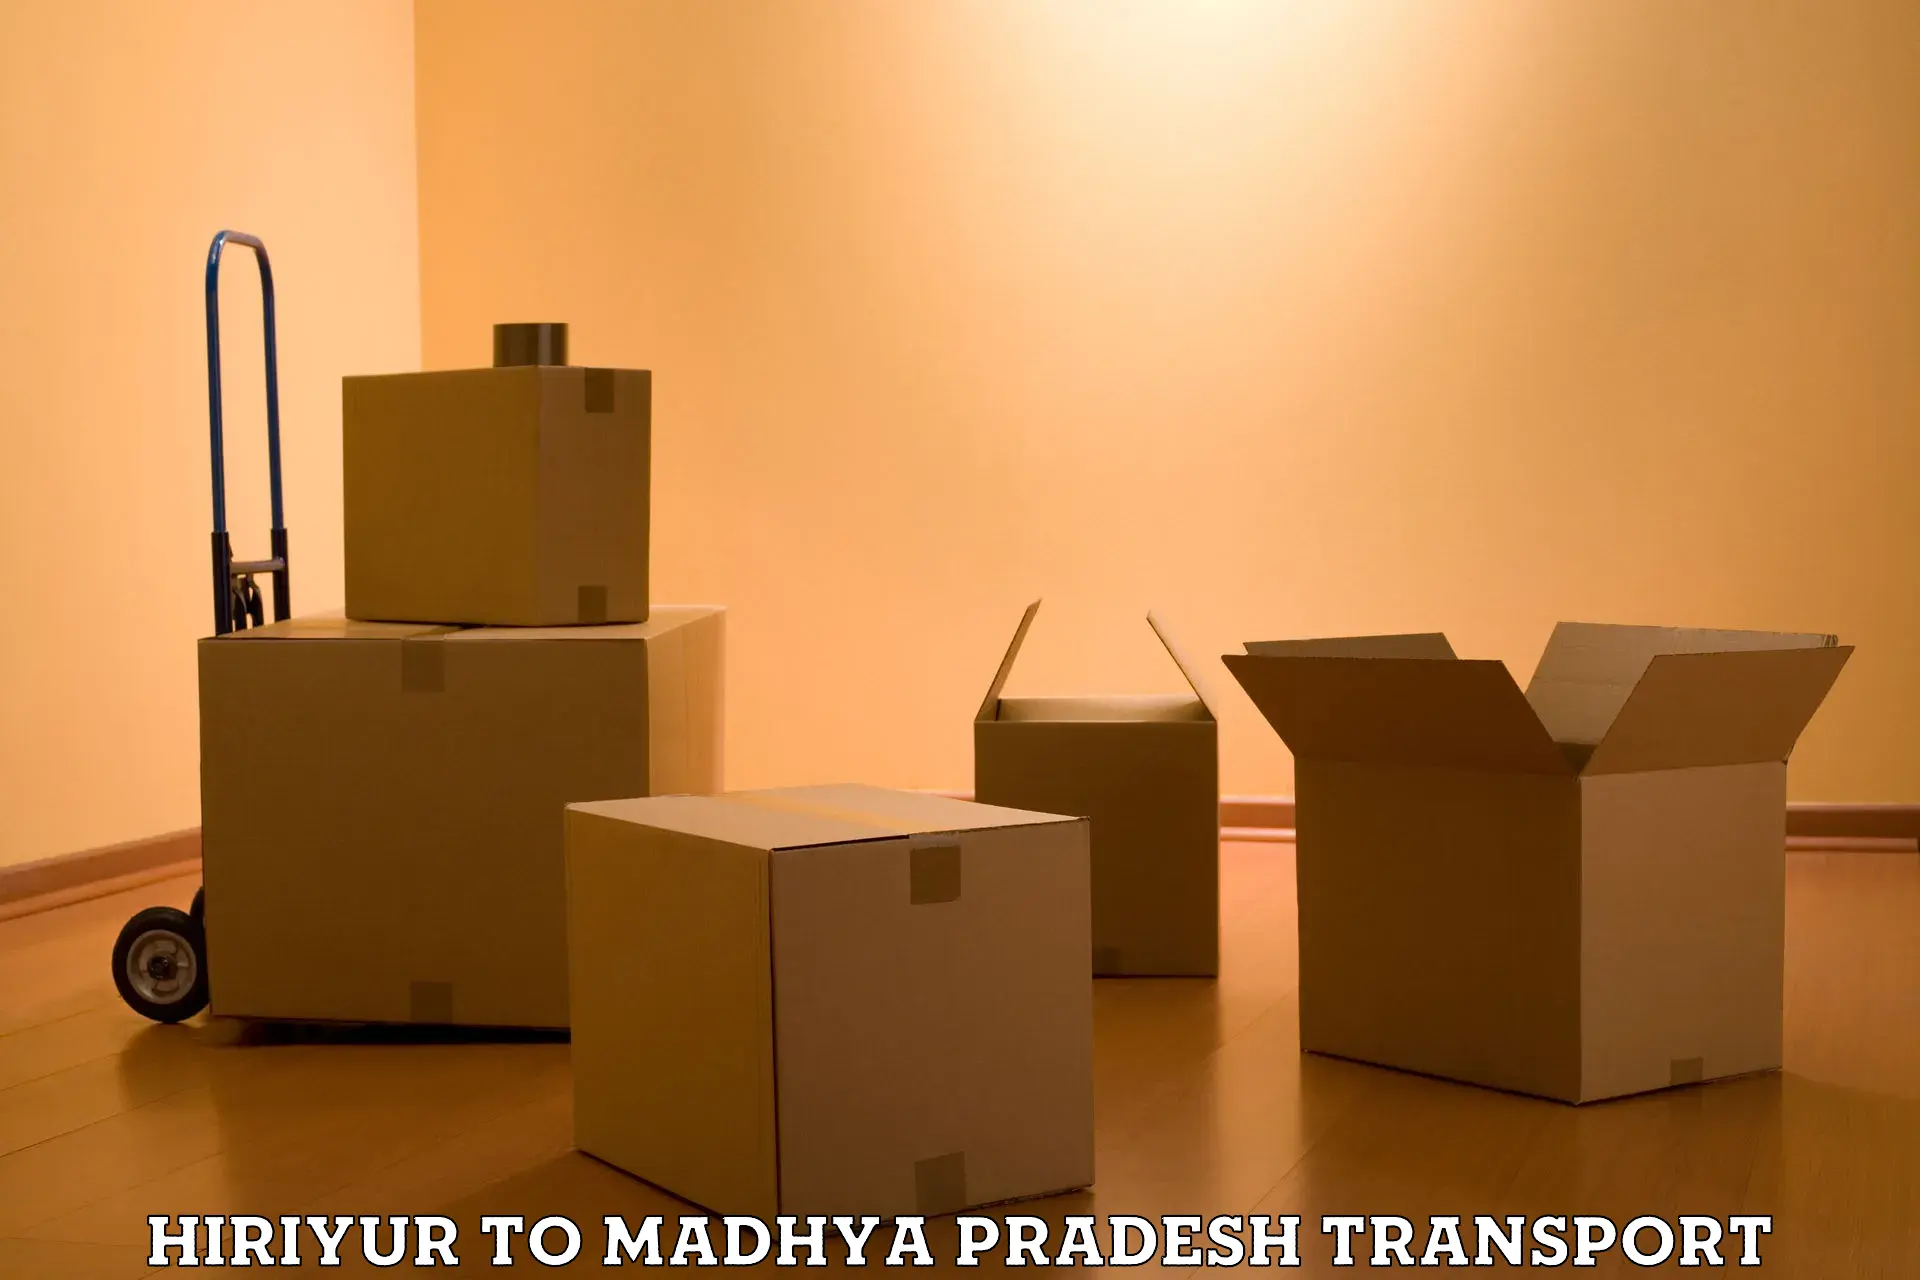 Goods delivery service Hiriyur to Madhya Pradesh